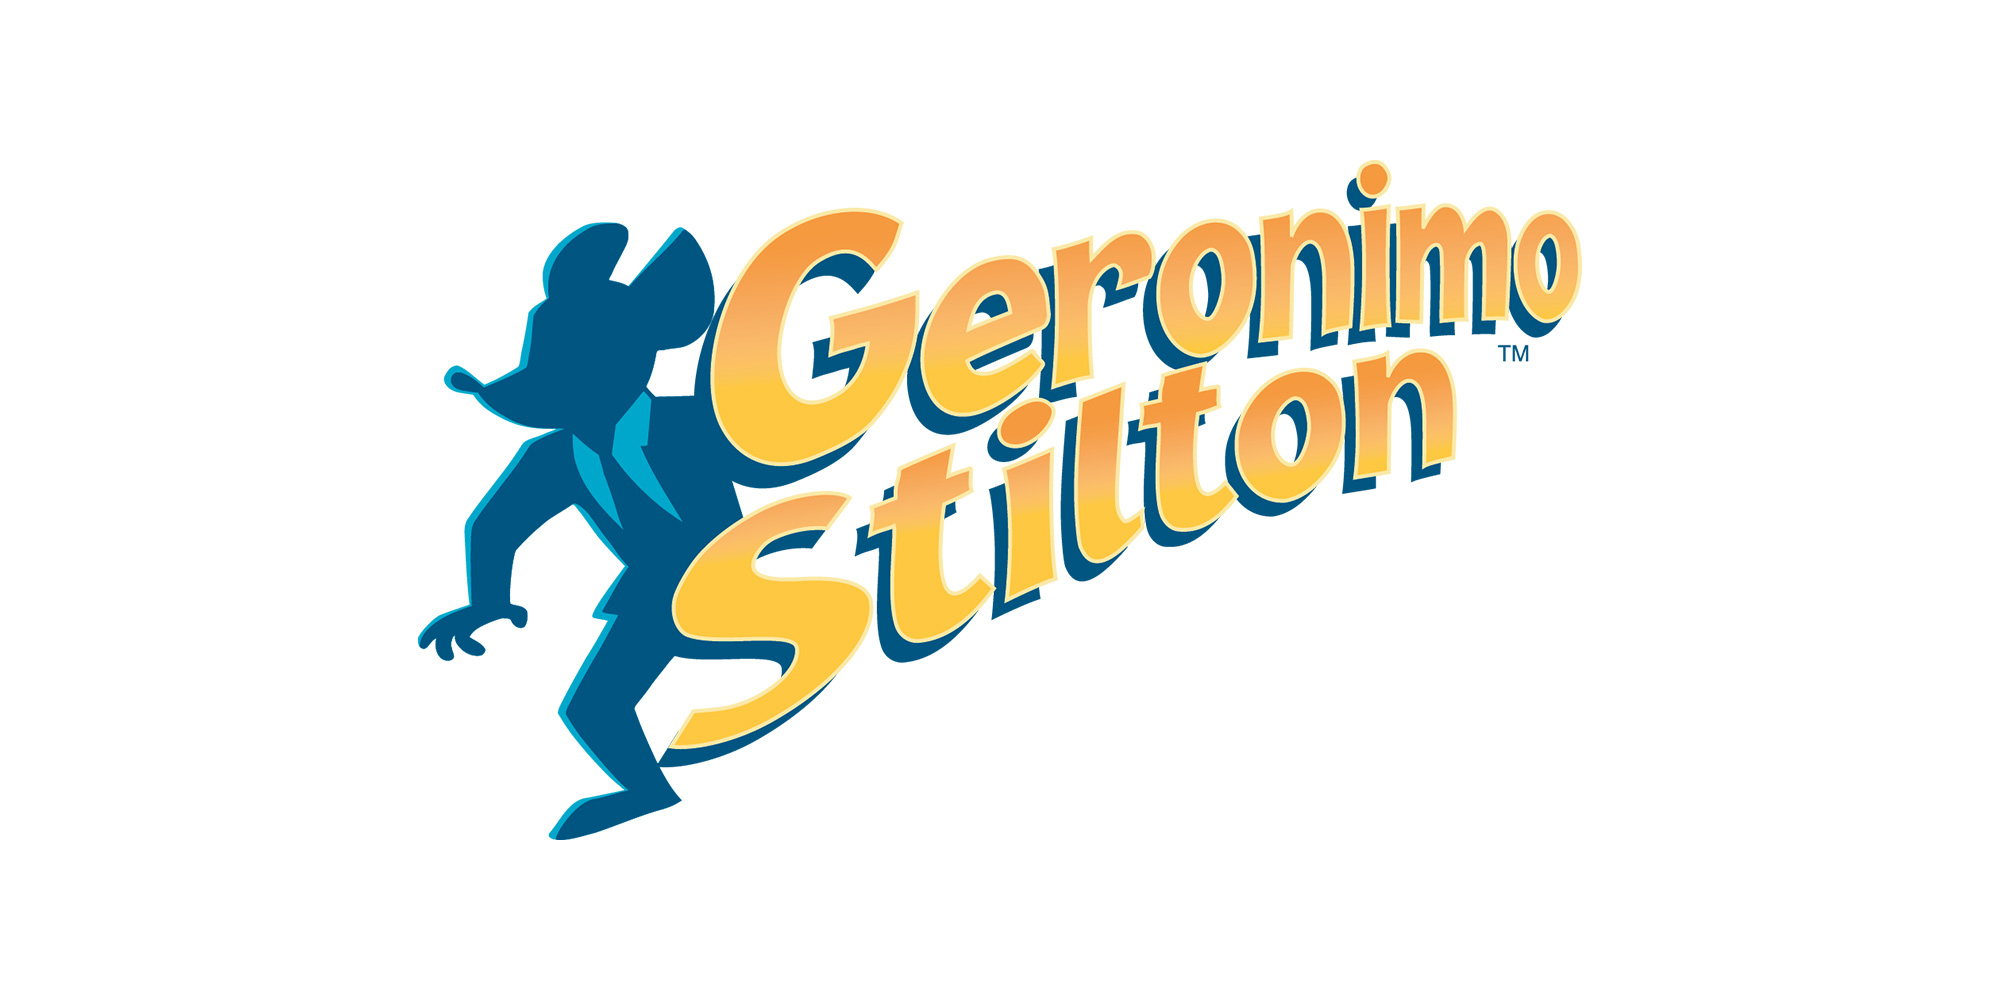 Geronimo Stilton, Hardware